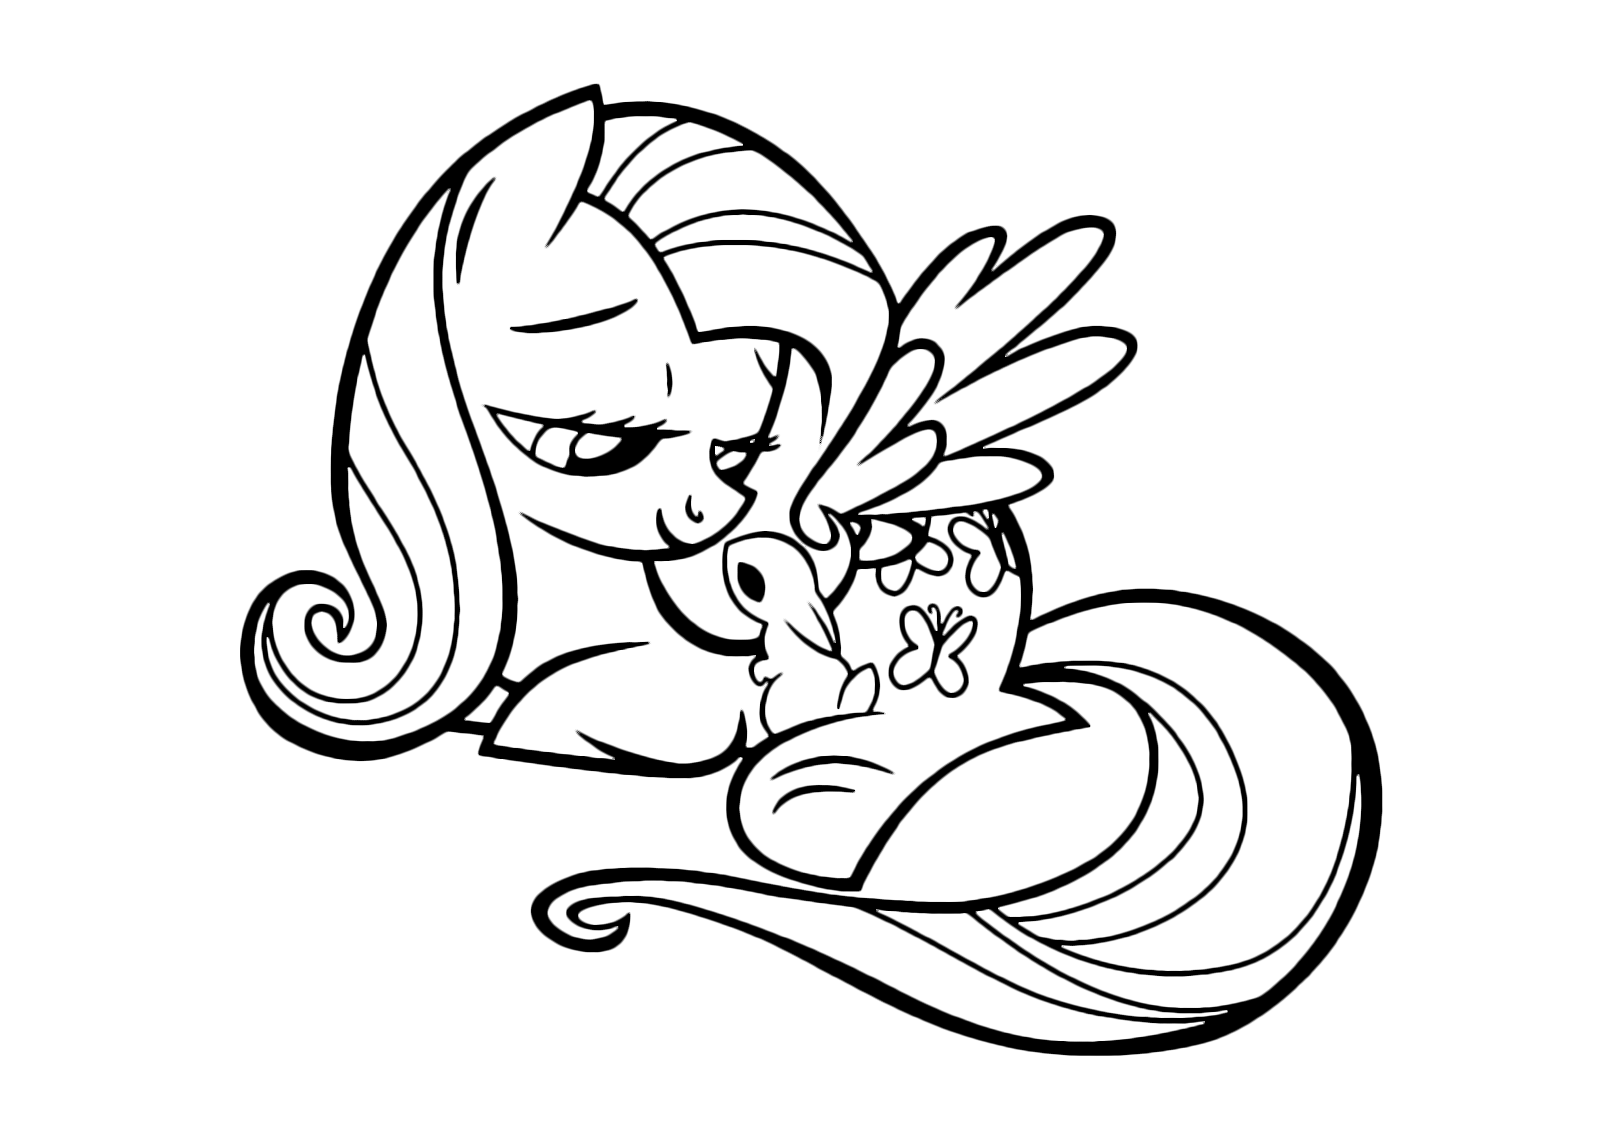 My Little Pony - Fluttershy embraces a bunny